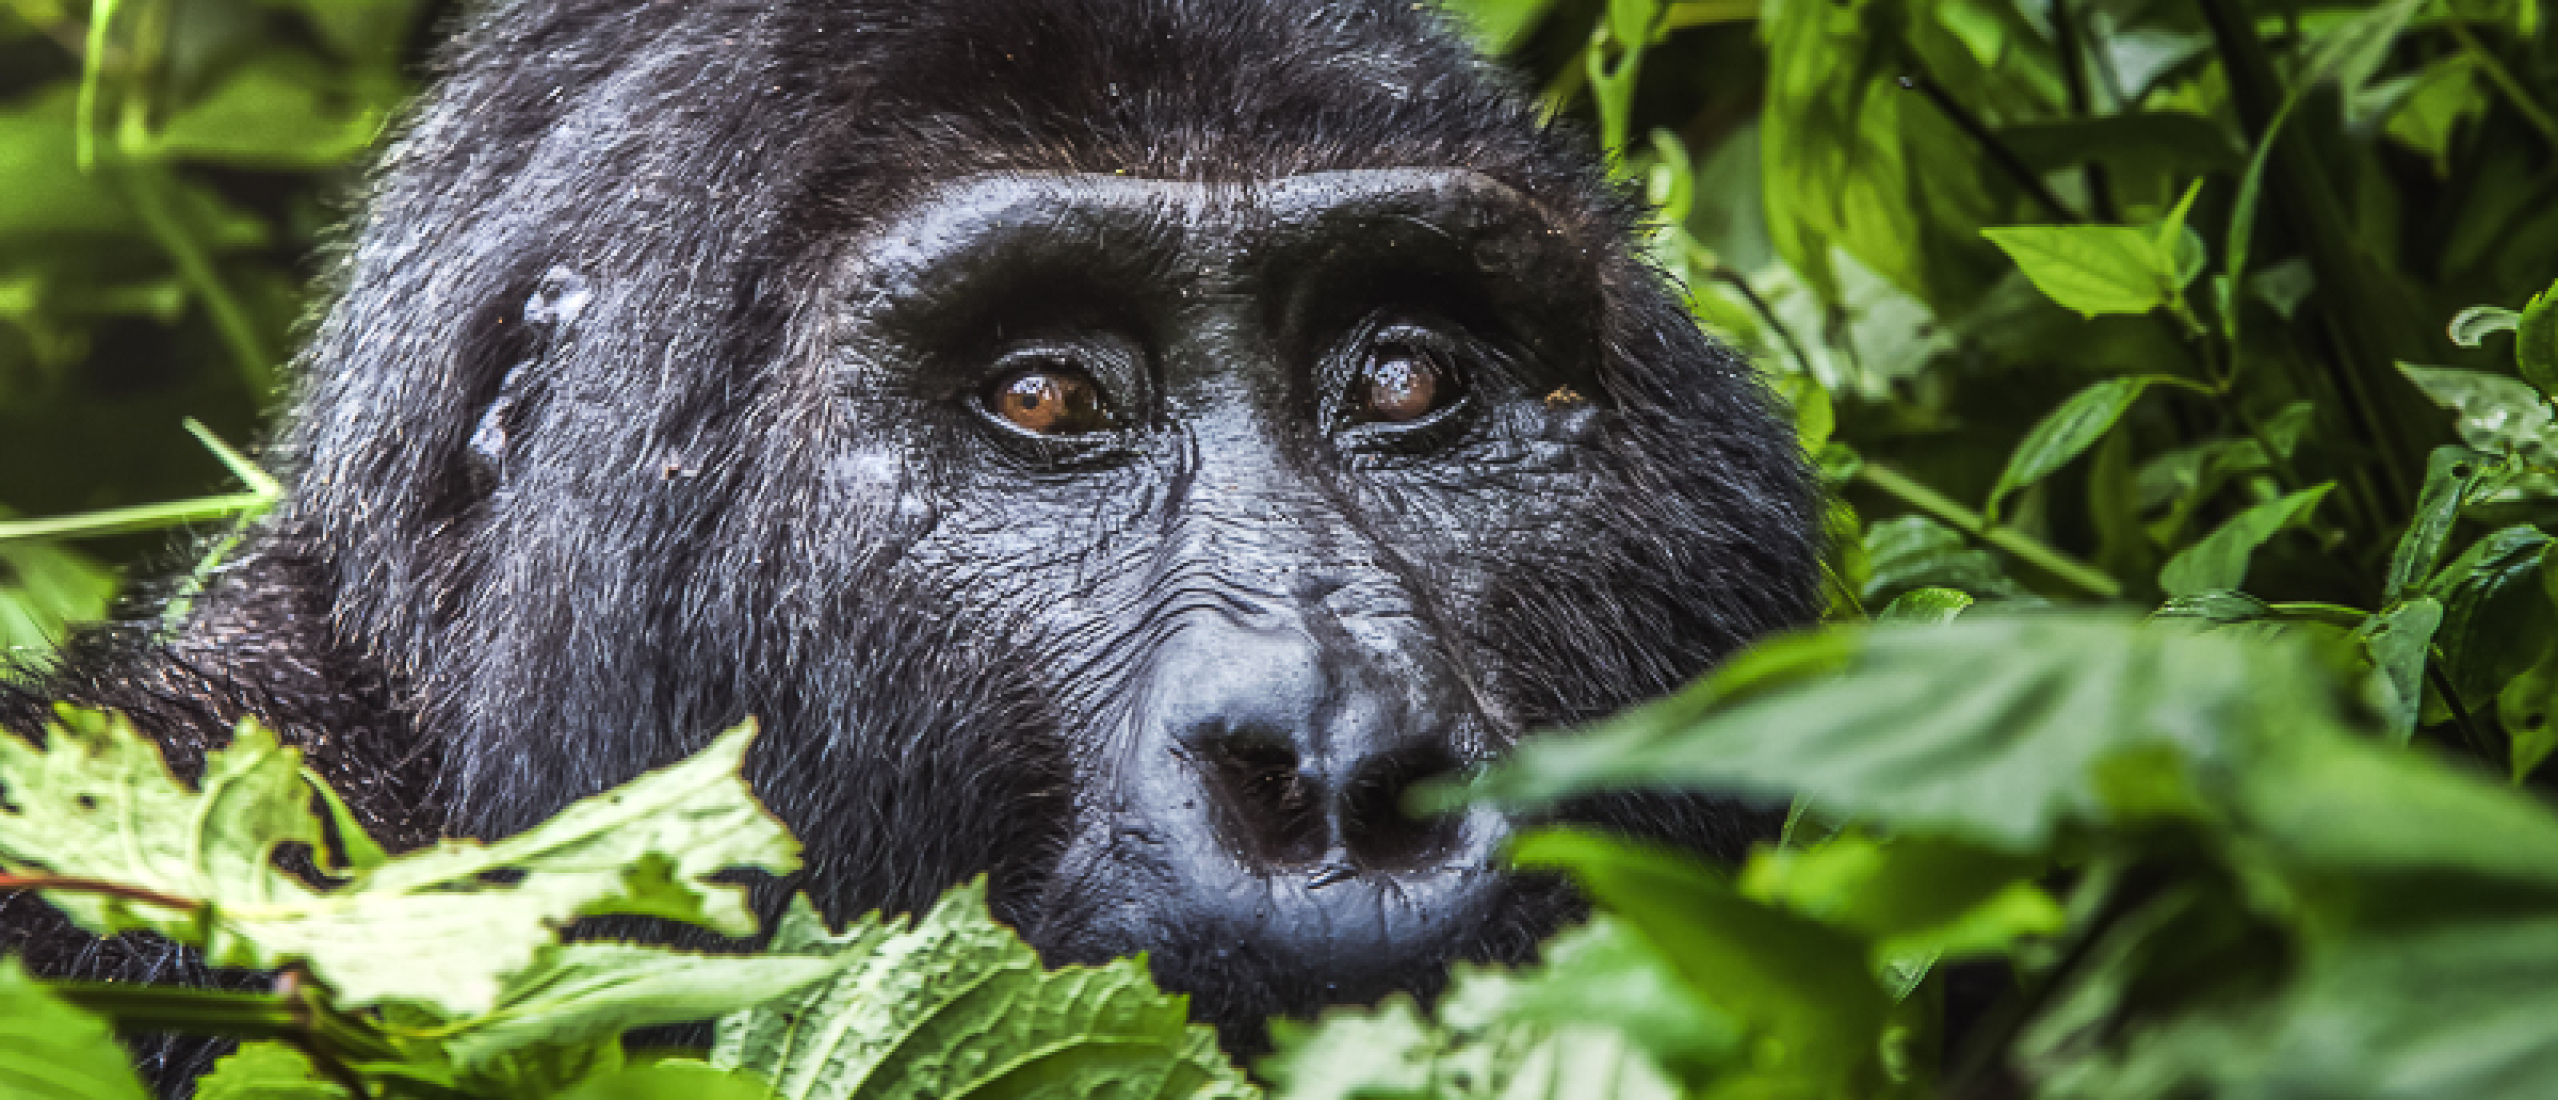 Gorilla trekking Uganda with Gorilla permit